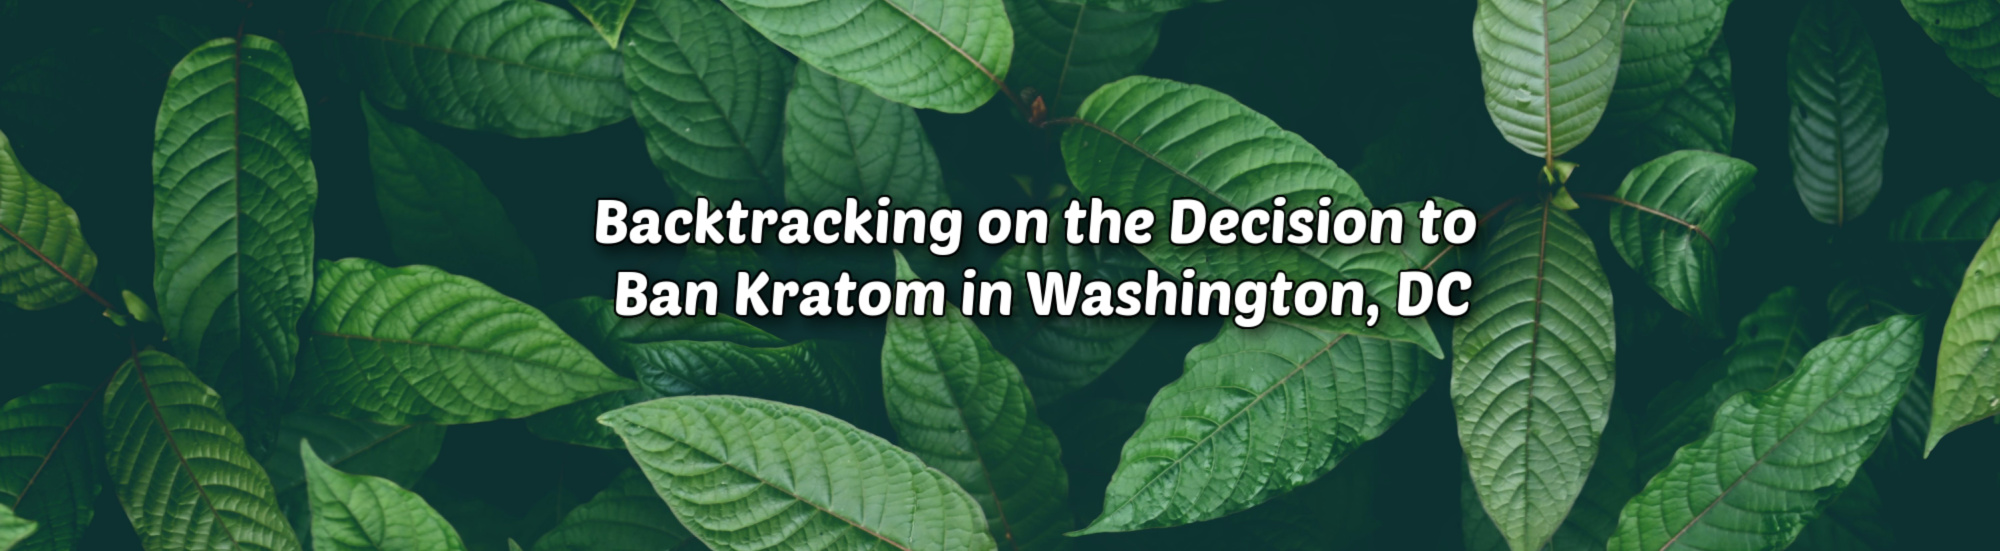 Best Shops to Buy Kratom in Washington, DC